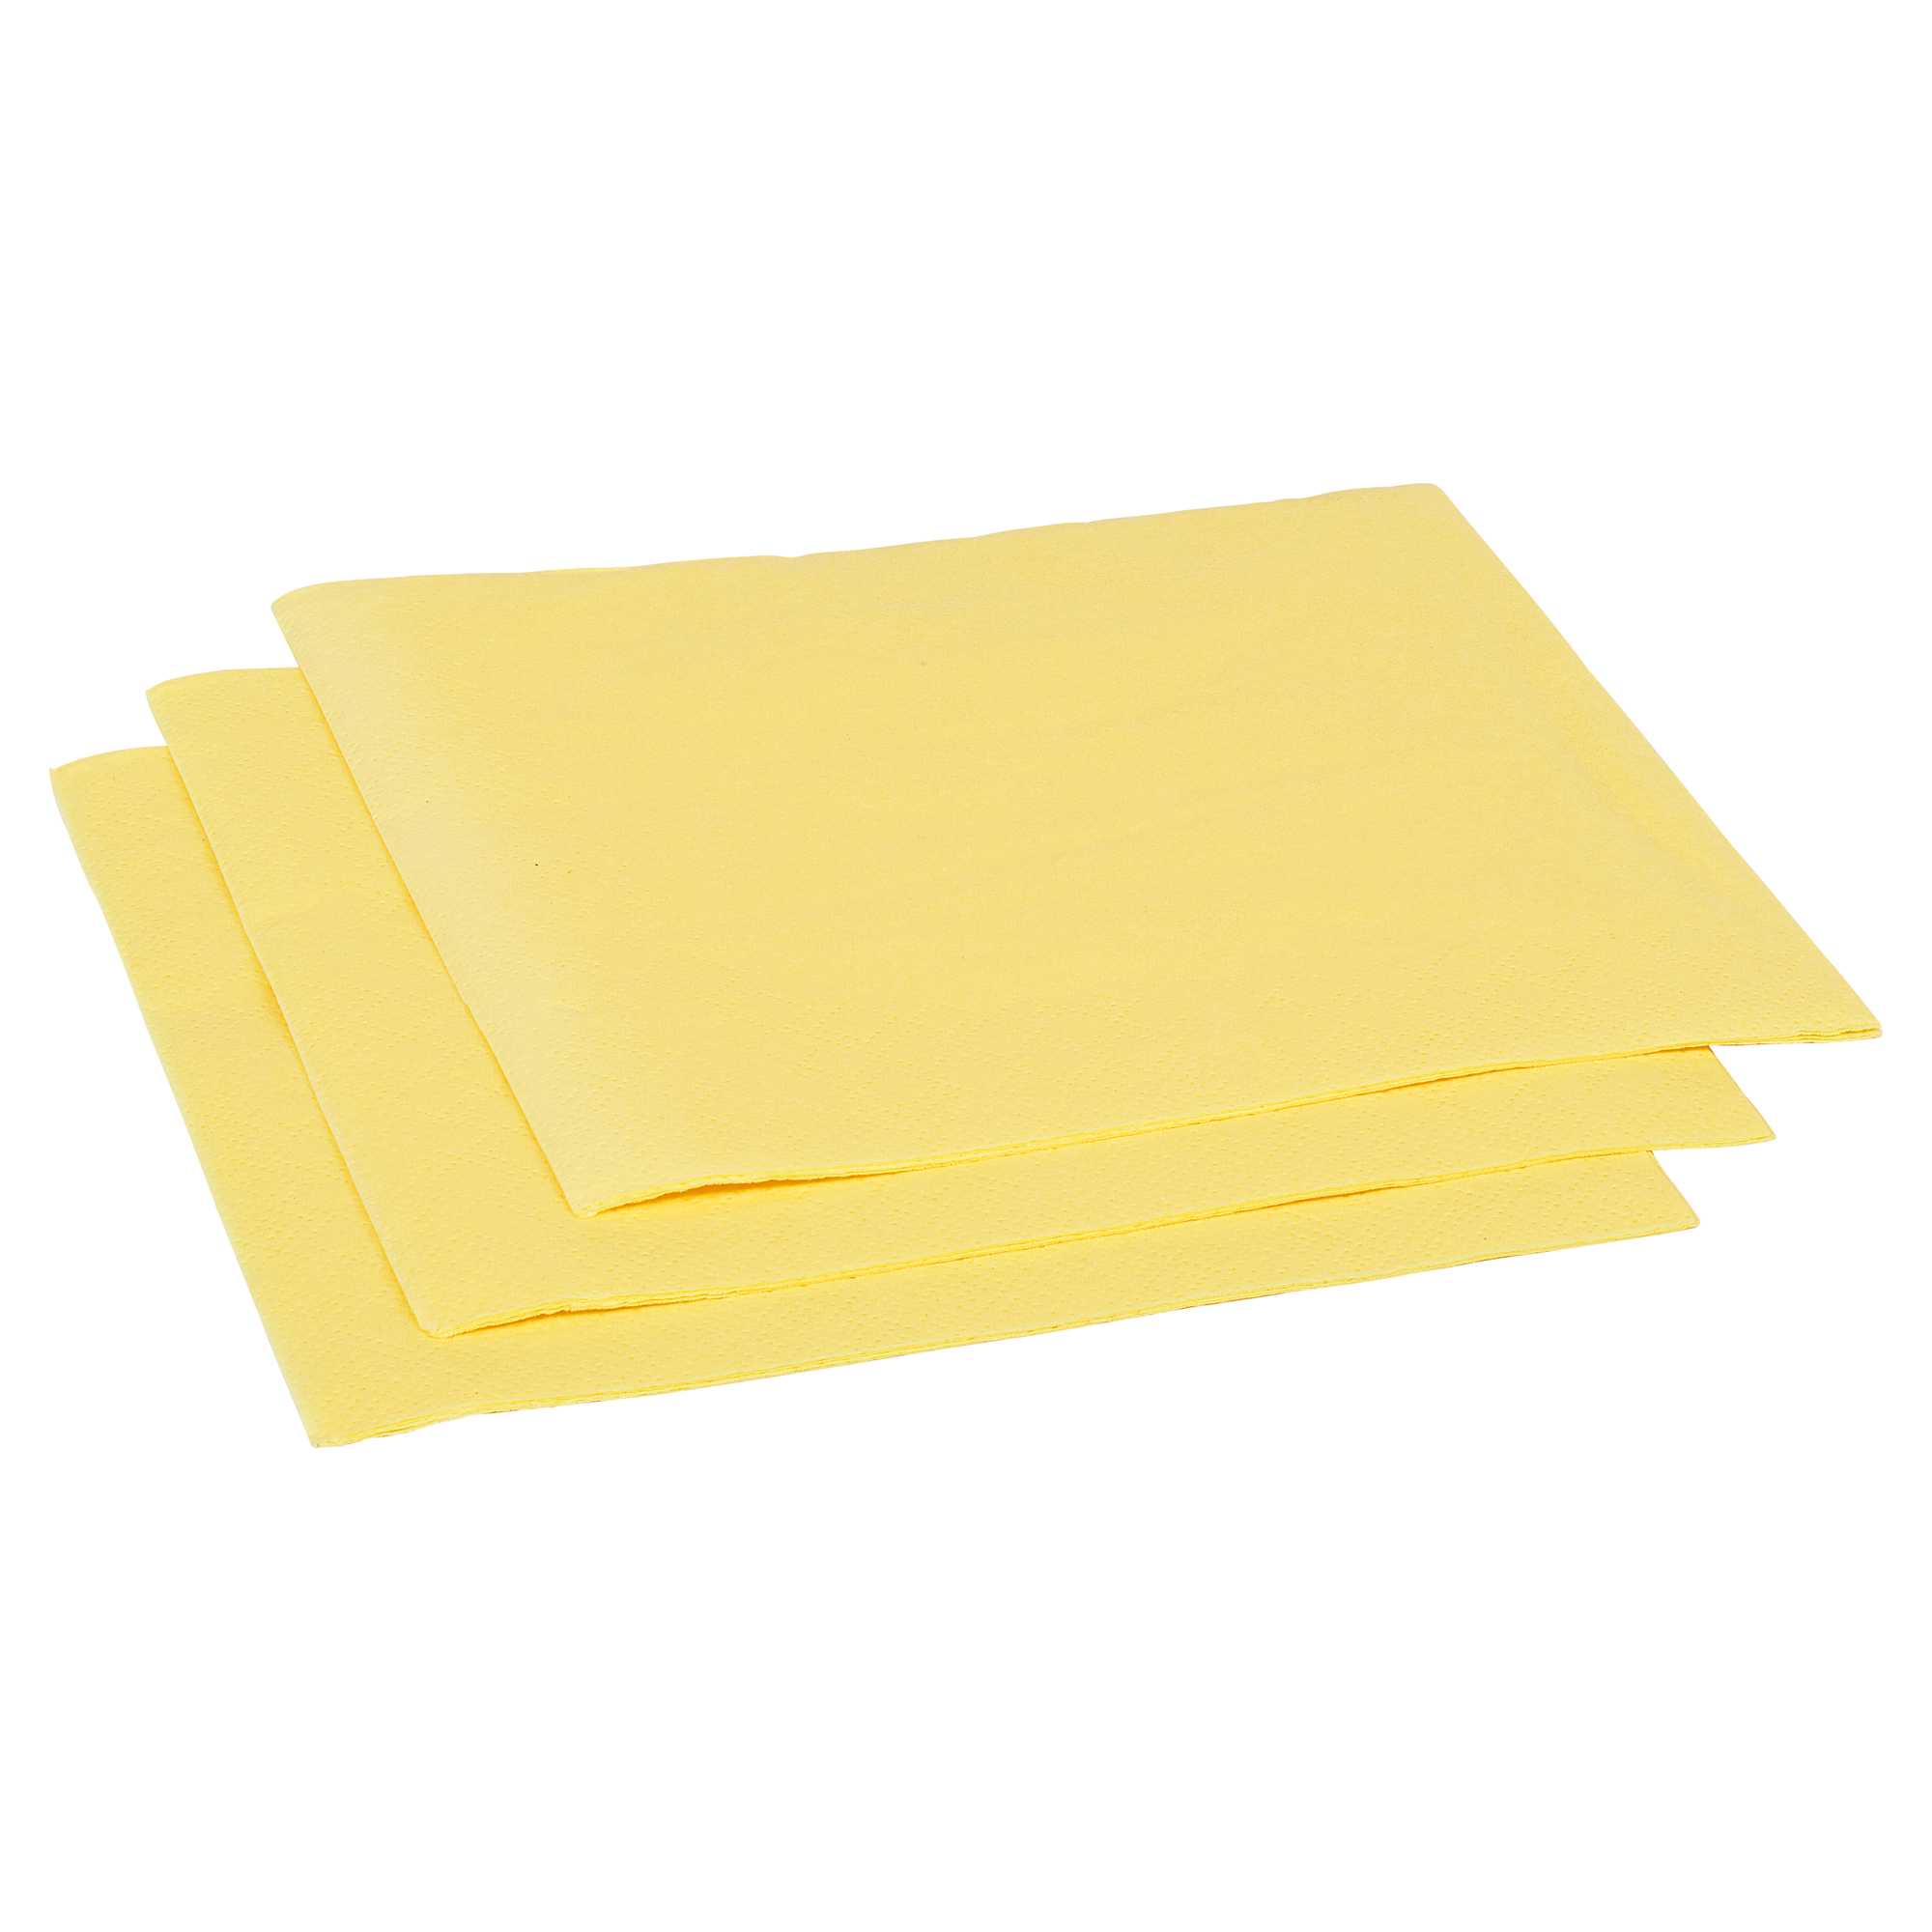 Zelltuch-Servietten 33 x 33 cm 30 Stück gelb + product picture